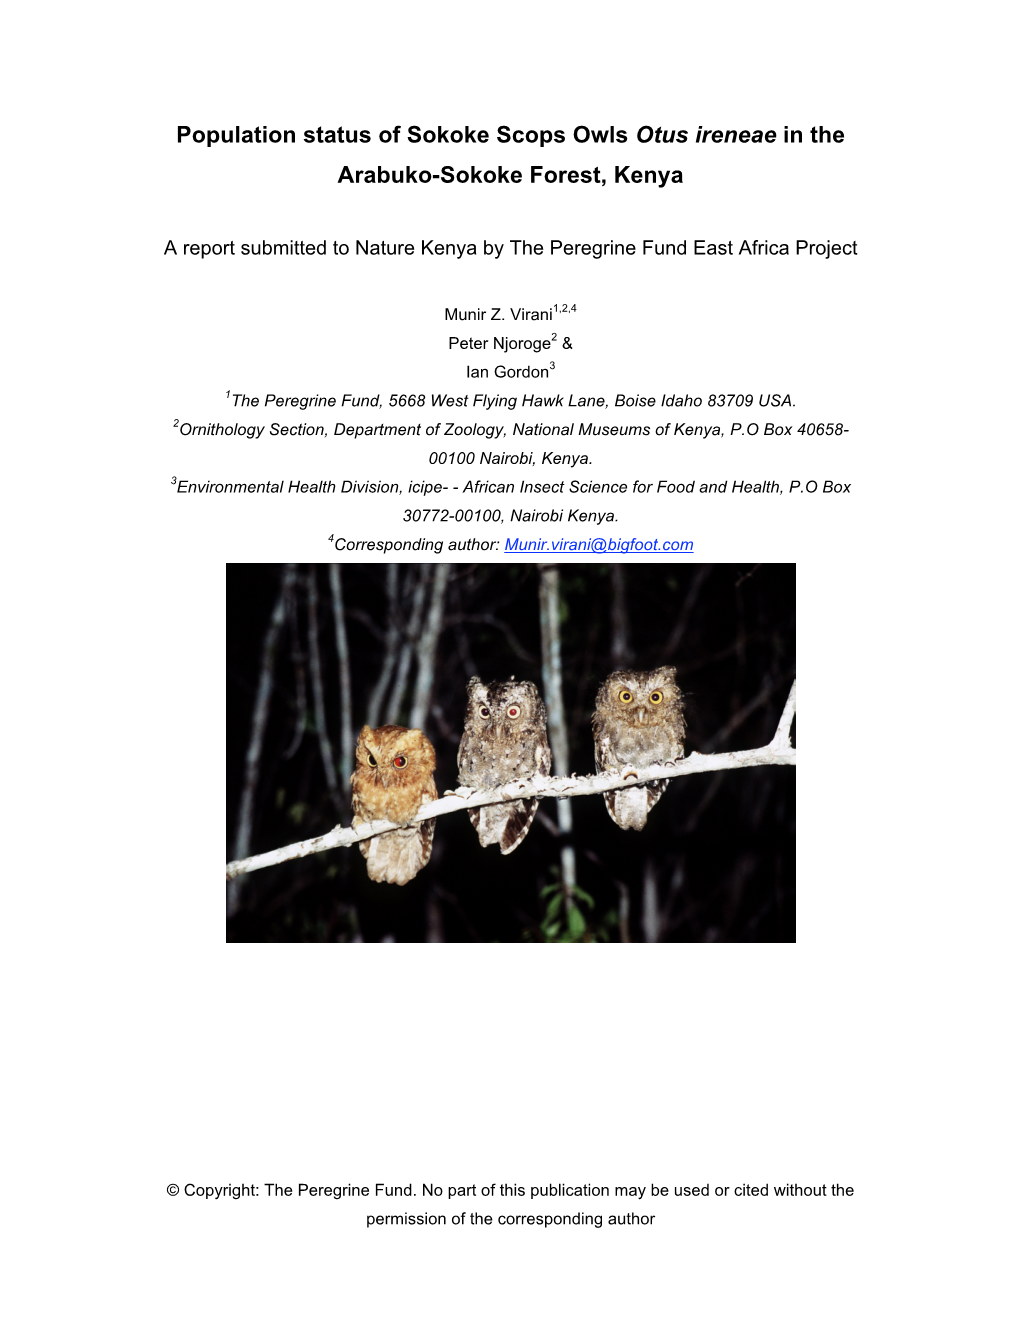 Population Status of Sokoke Scops Owls Otus Ireneae in the Arabuko-Sokoke Forest, Kenya